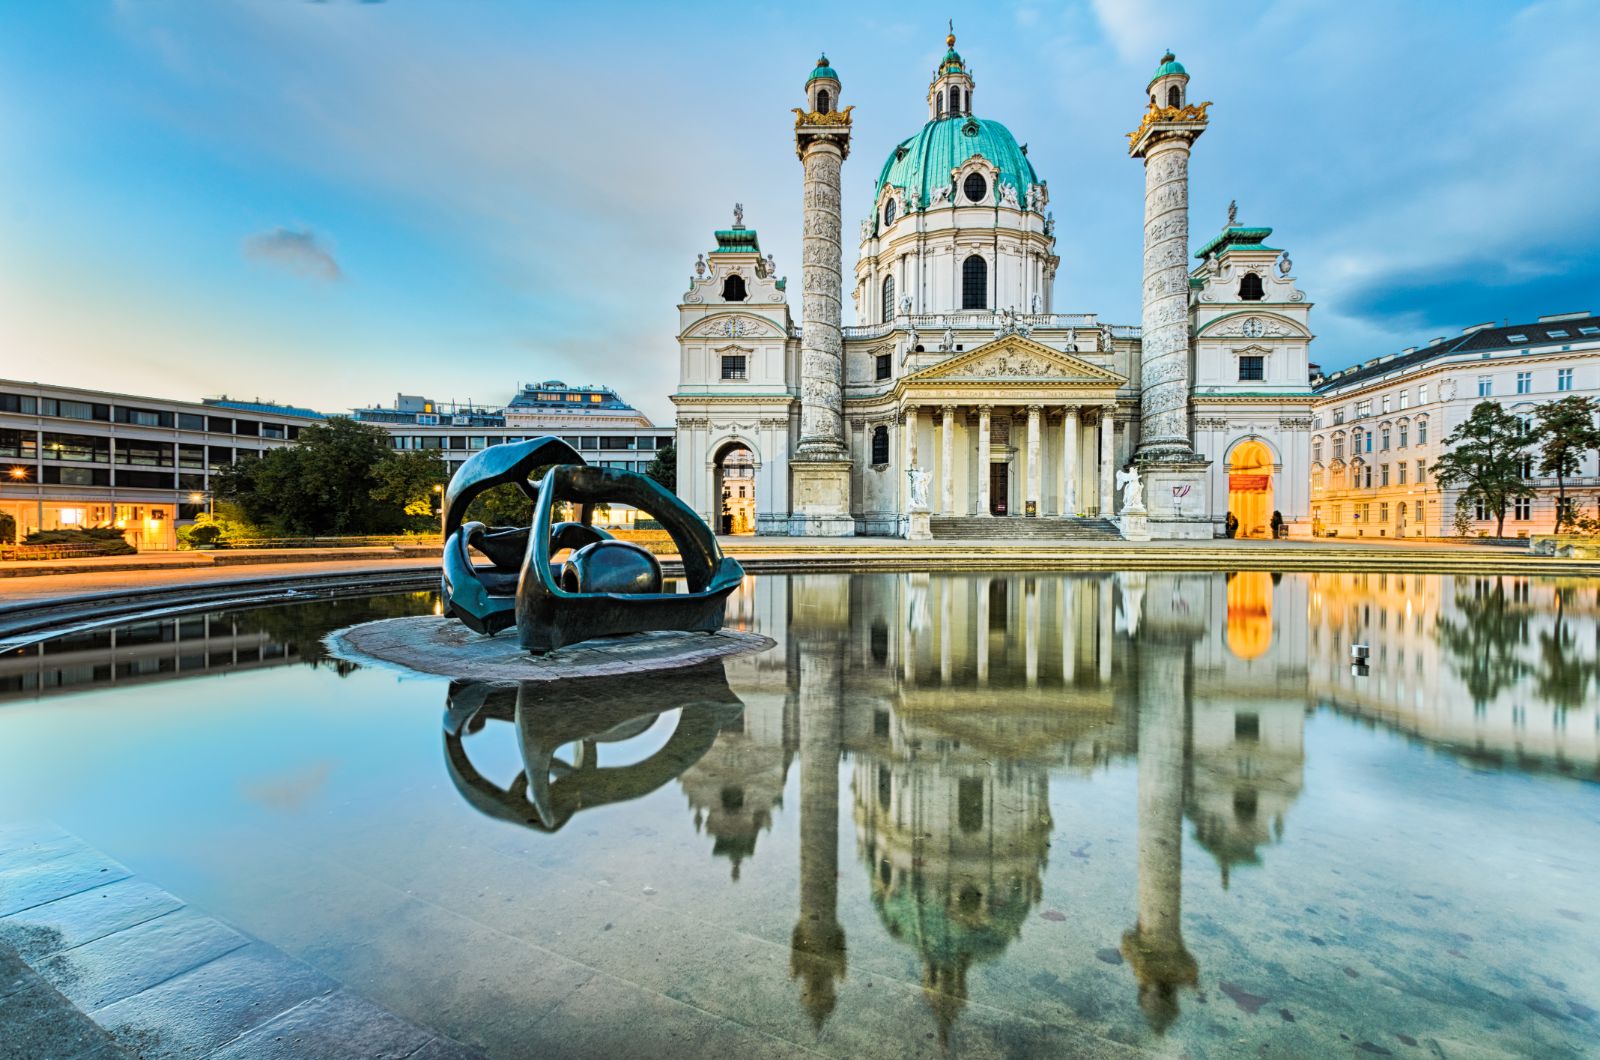 Karlskirche Fountain in Vienna, Austria